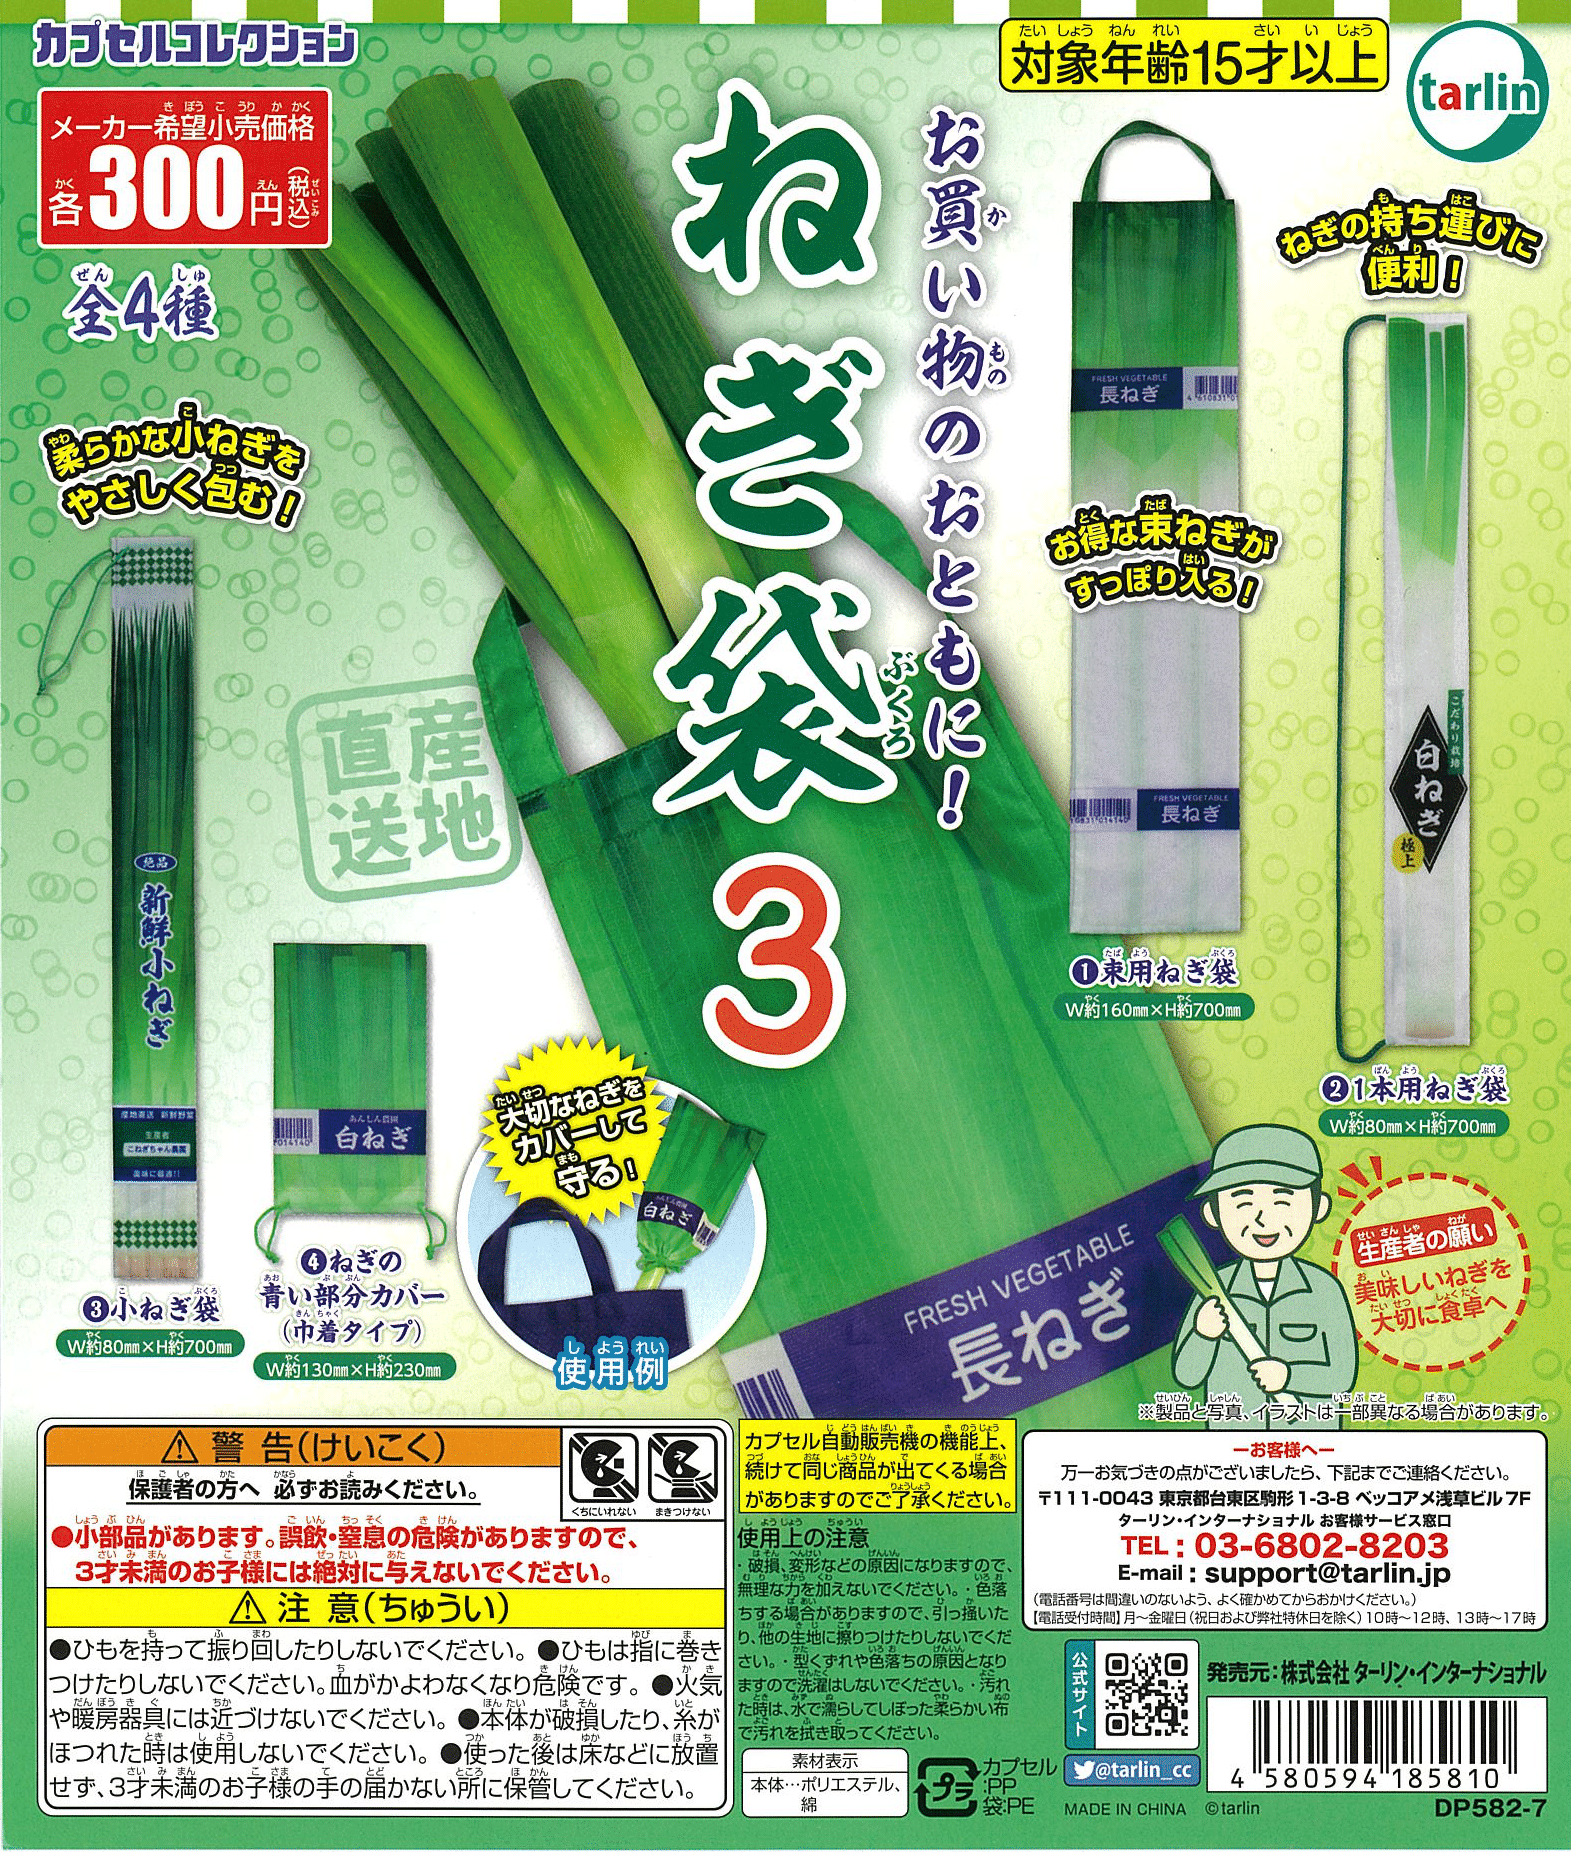 CP2634 Green Onion Bag 3